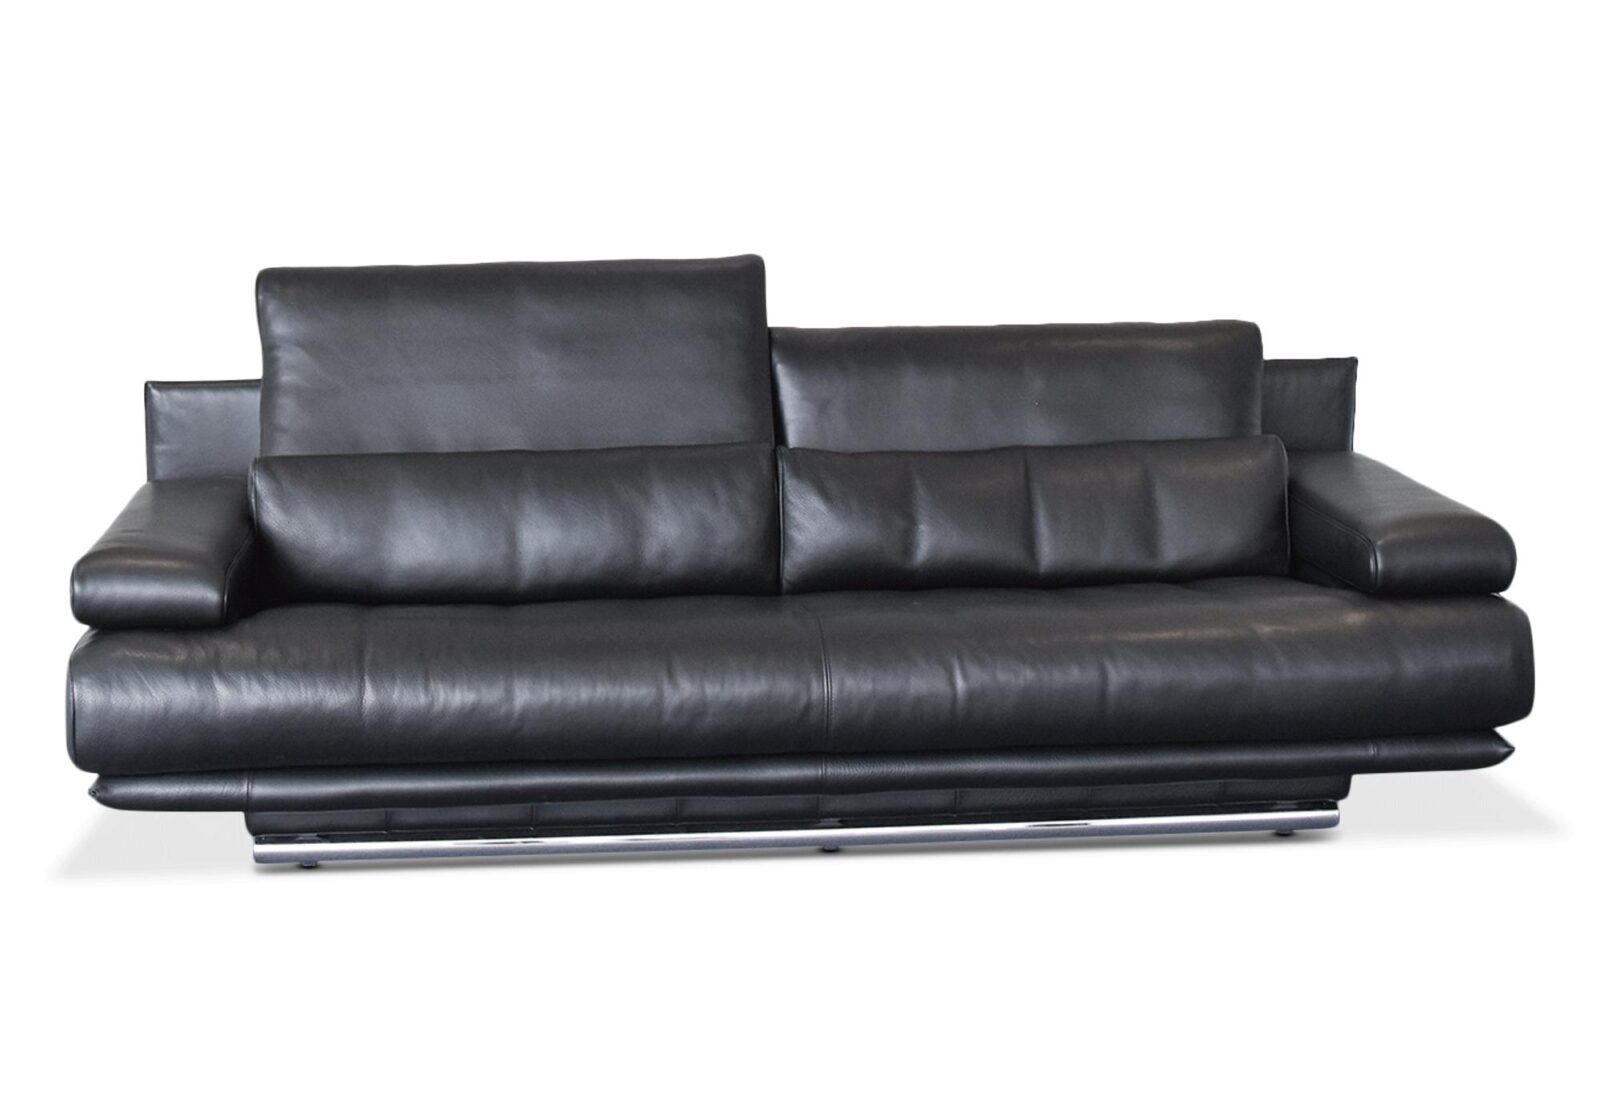 Sofa 6500 Rolf Benz aus Massivholz. Bezug: Leder. Farbe: Schwarz. Erhältlich bei Möbel Gallati.